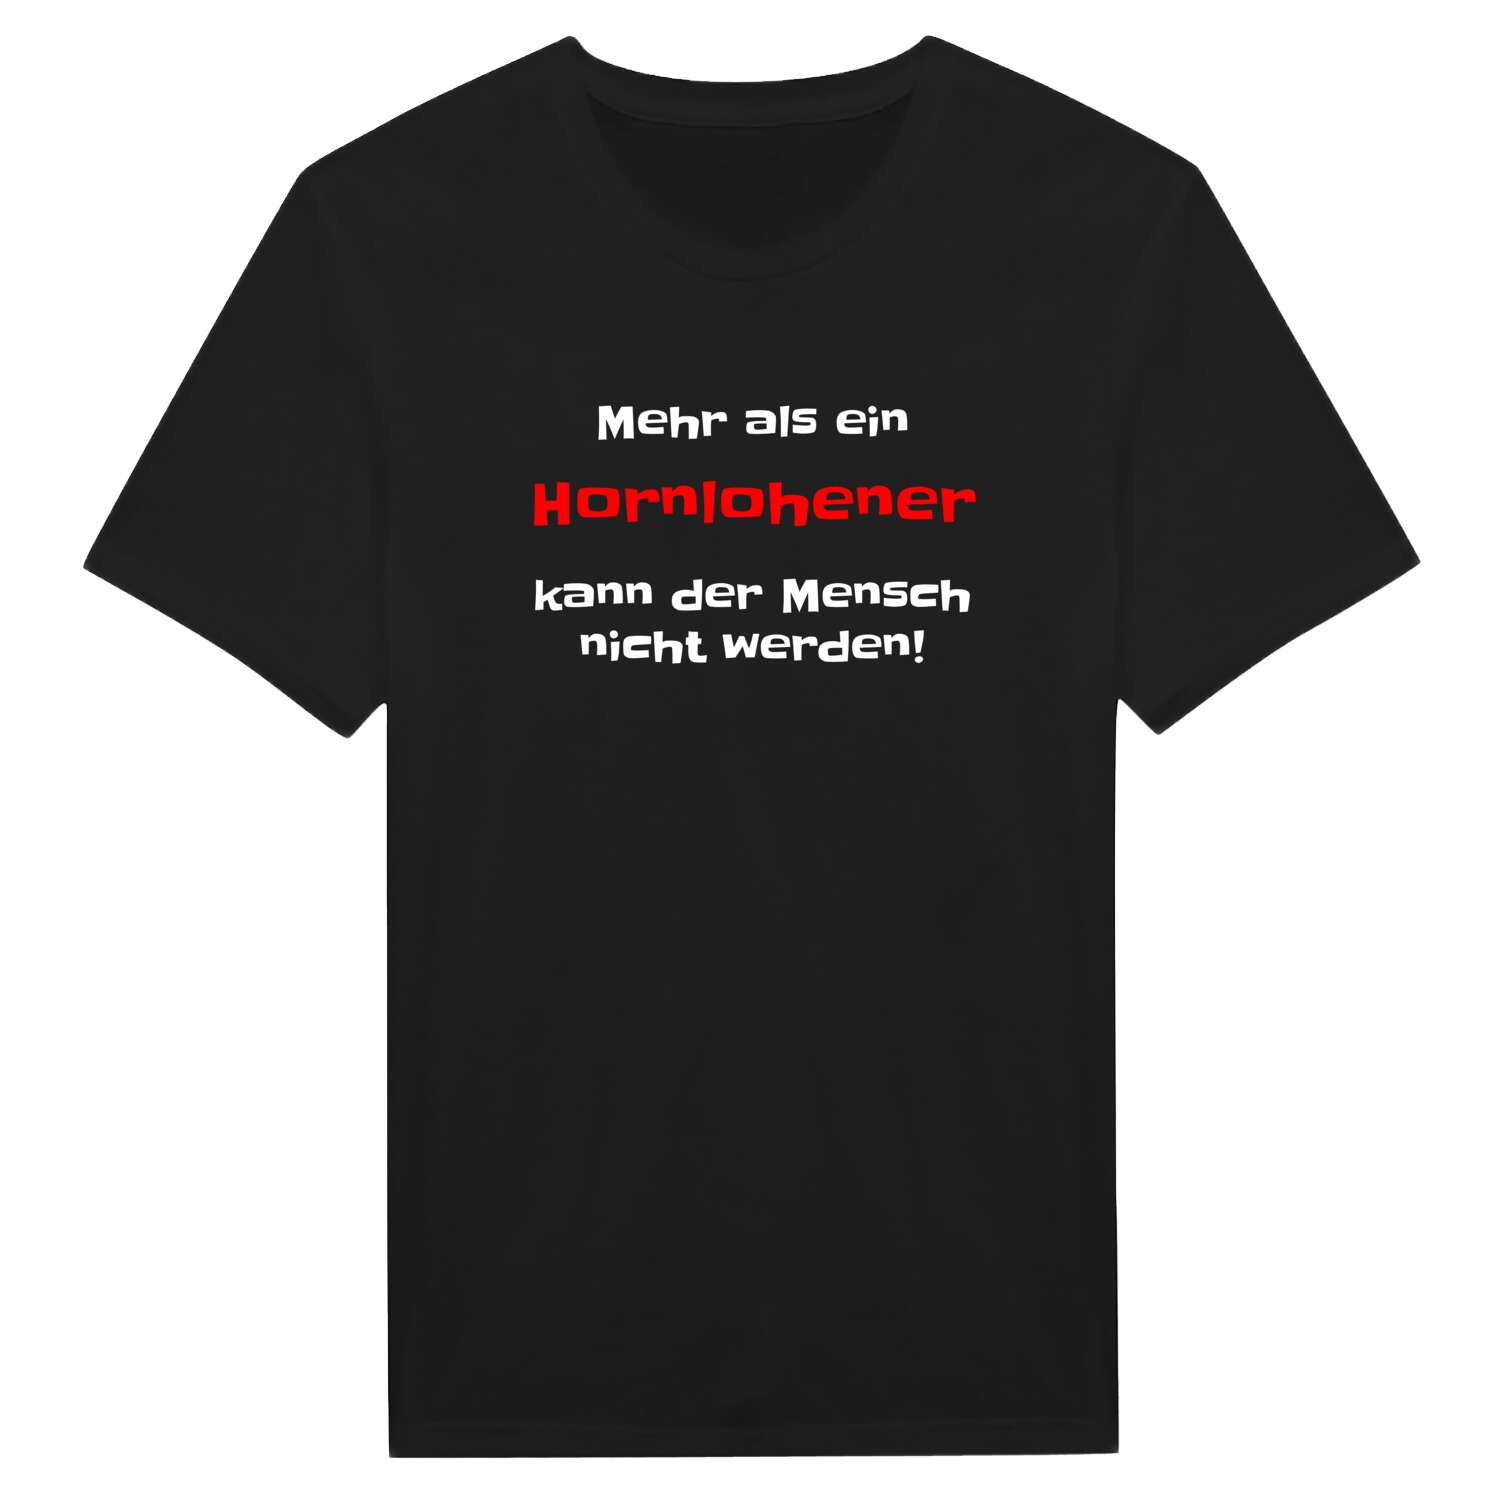 Hornlohe T-Shirt »Mehr als ein«